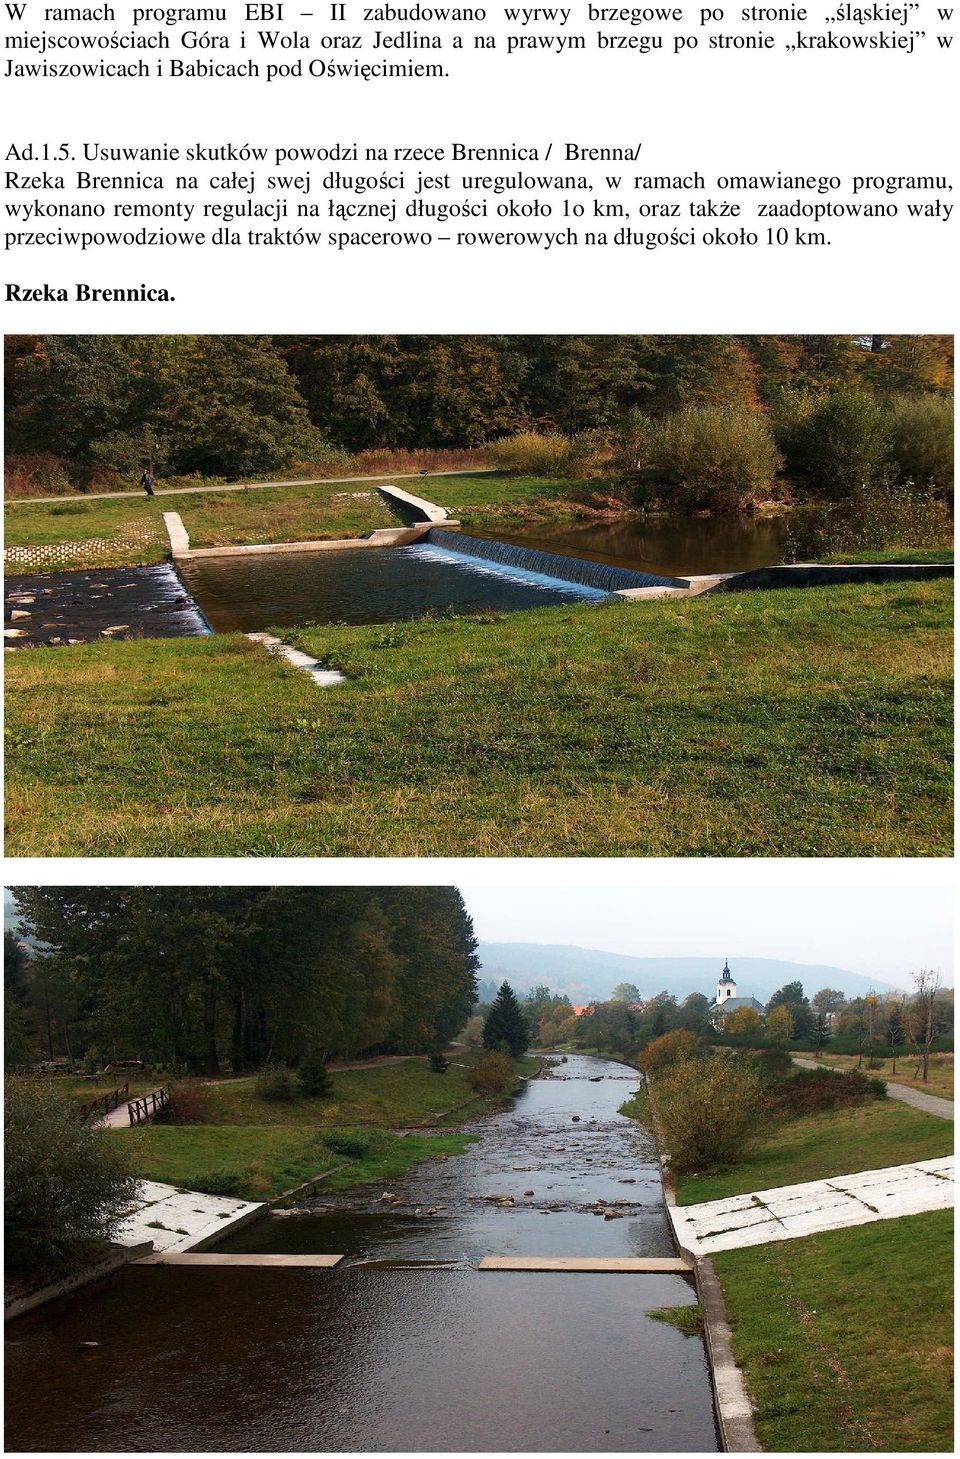 Usuwanie skutków powodzi na rzece Brennica / Brenna/ Rzeka Brennica na całej swej długości jest uregulowana, w ramach omawianego